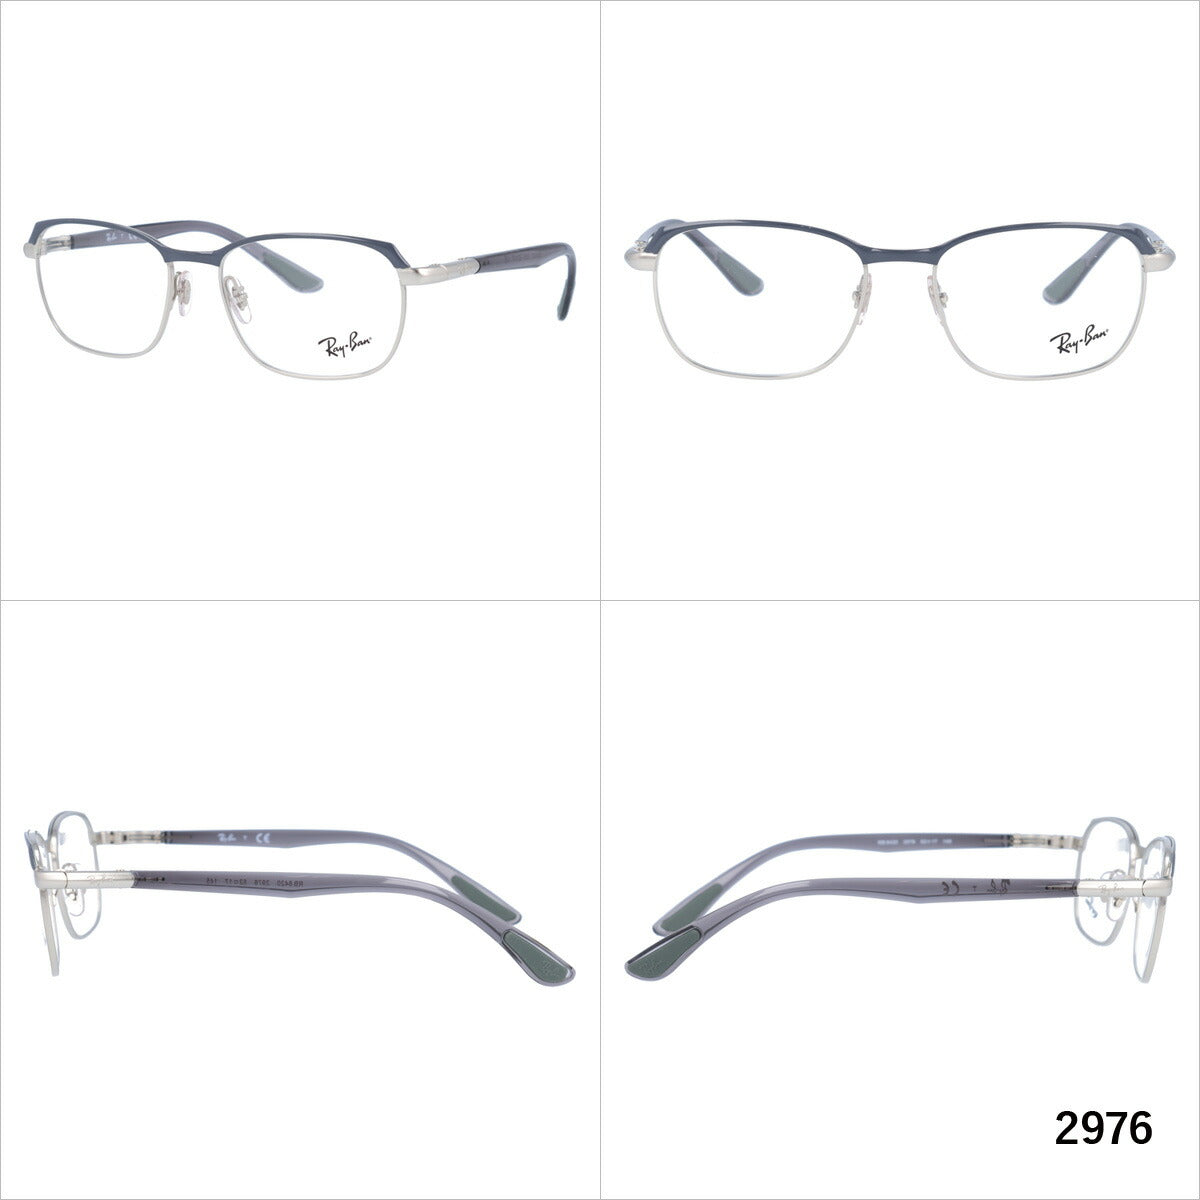 レイバン メガネ フレーム RX6420 2976・2978 52 スクエア型 メンズ レディース 眼鏡 度付き 度なし 伊達メガネ ブランドメガネ 紫外線 ブルーライトカット 老眼鏡 花粉対策 Ray-Ban